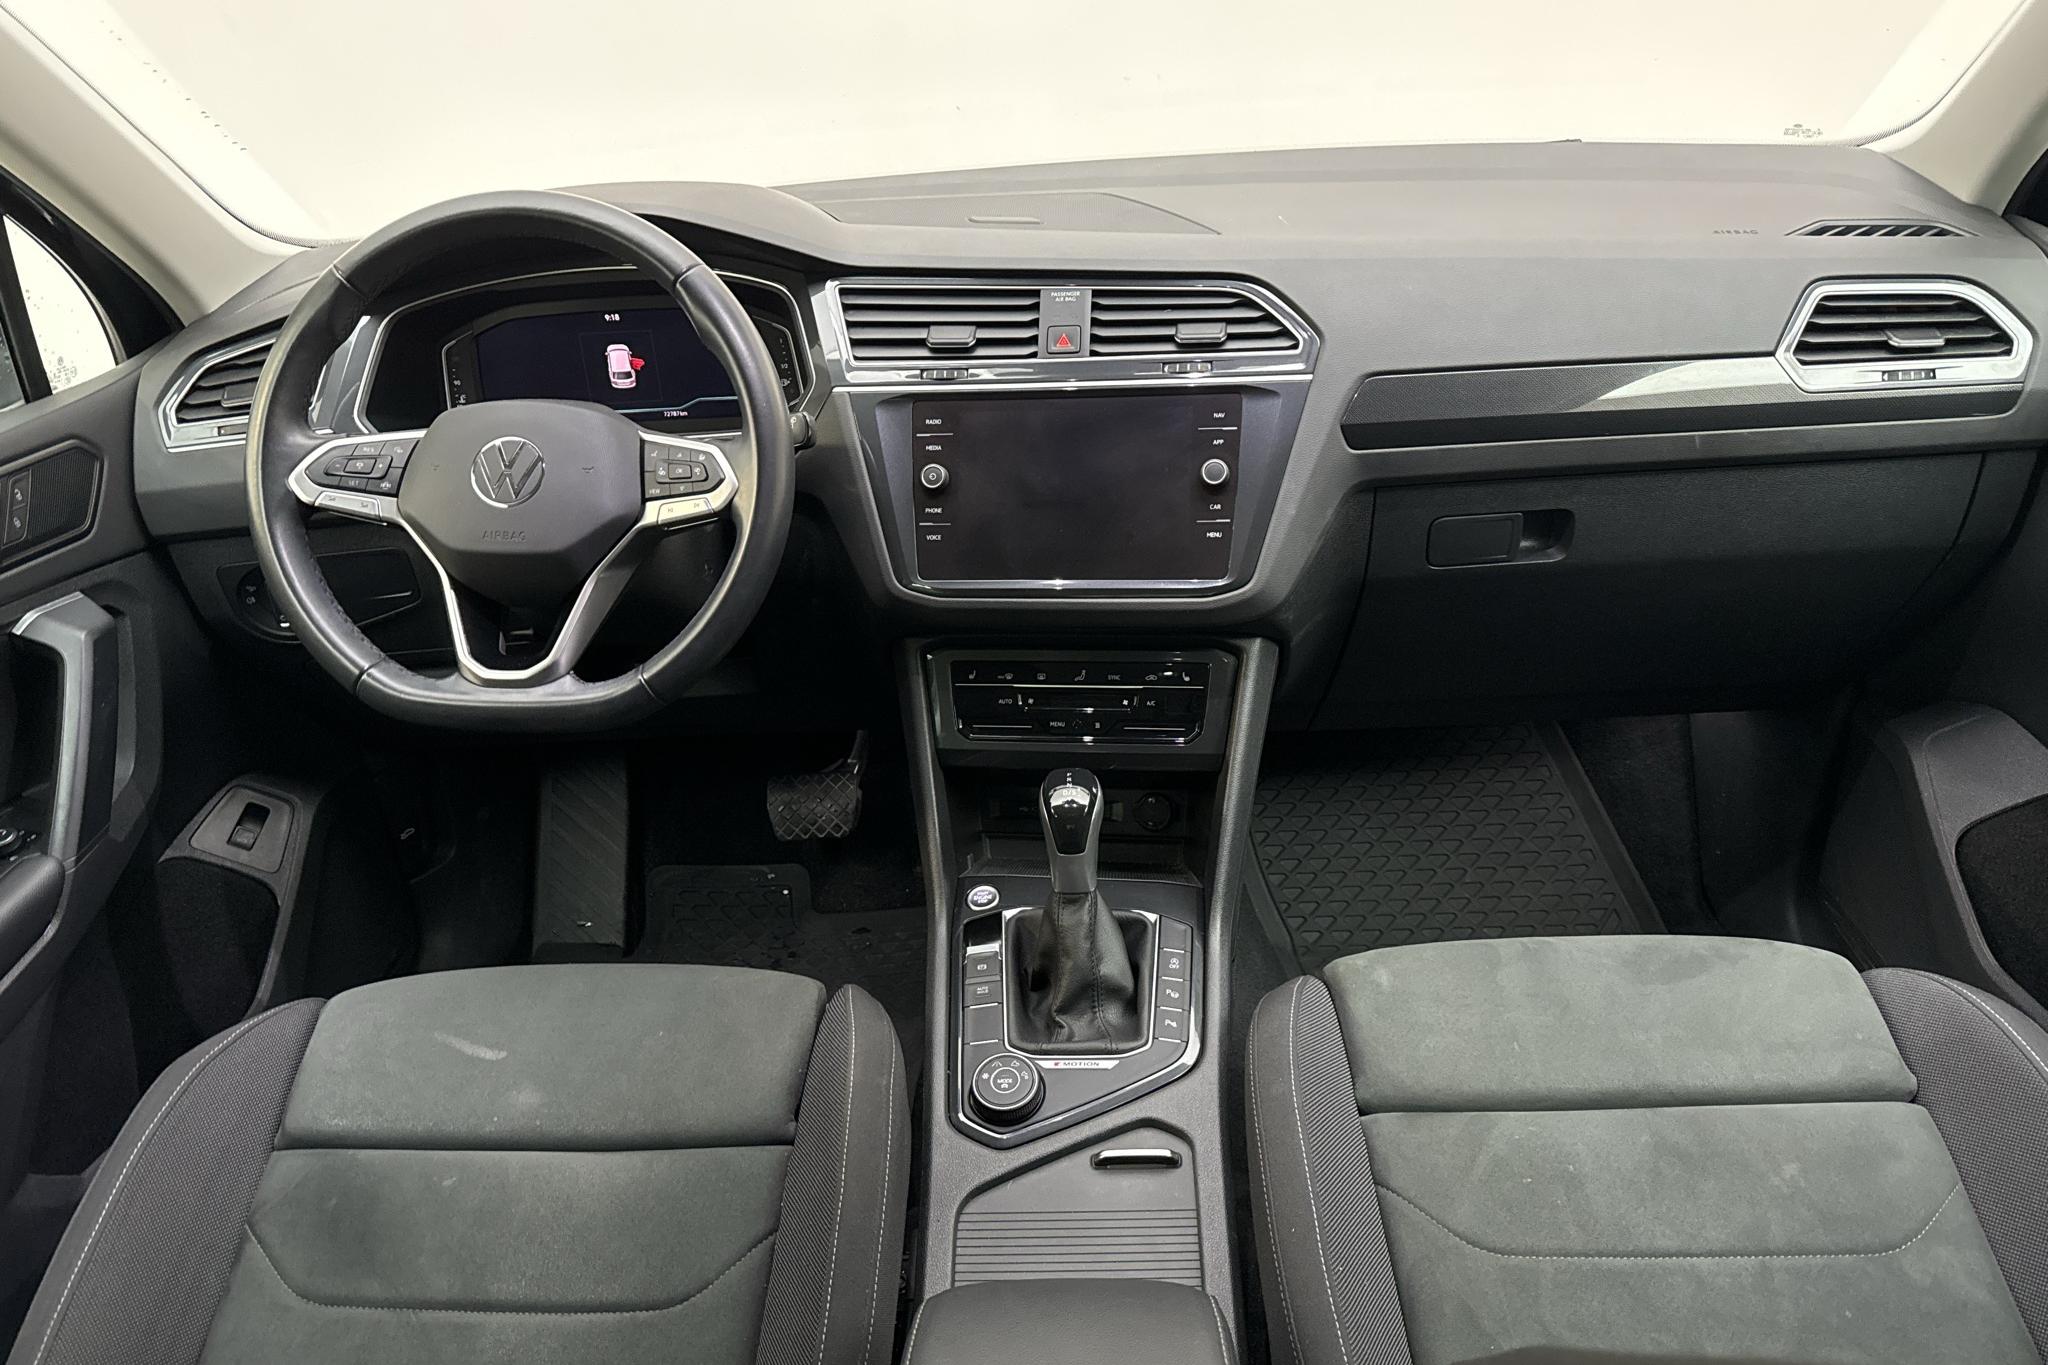 VW Tiguan 2.0 TDI 4MOTION (200hk) - 72 780 km - Automatic - blue - 2021